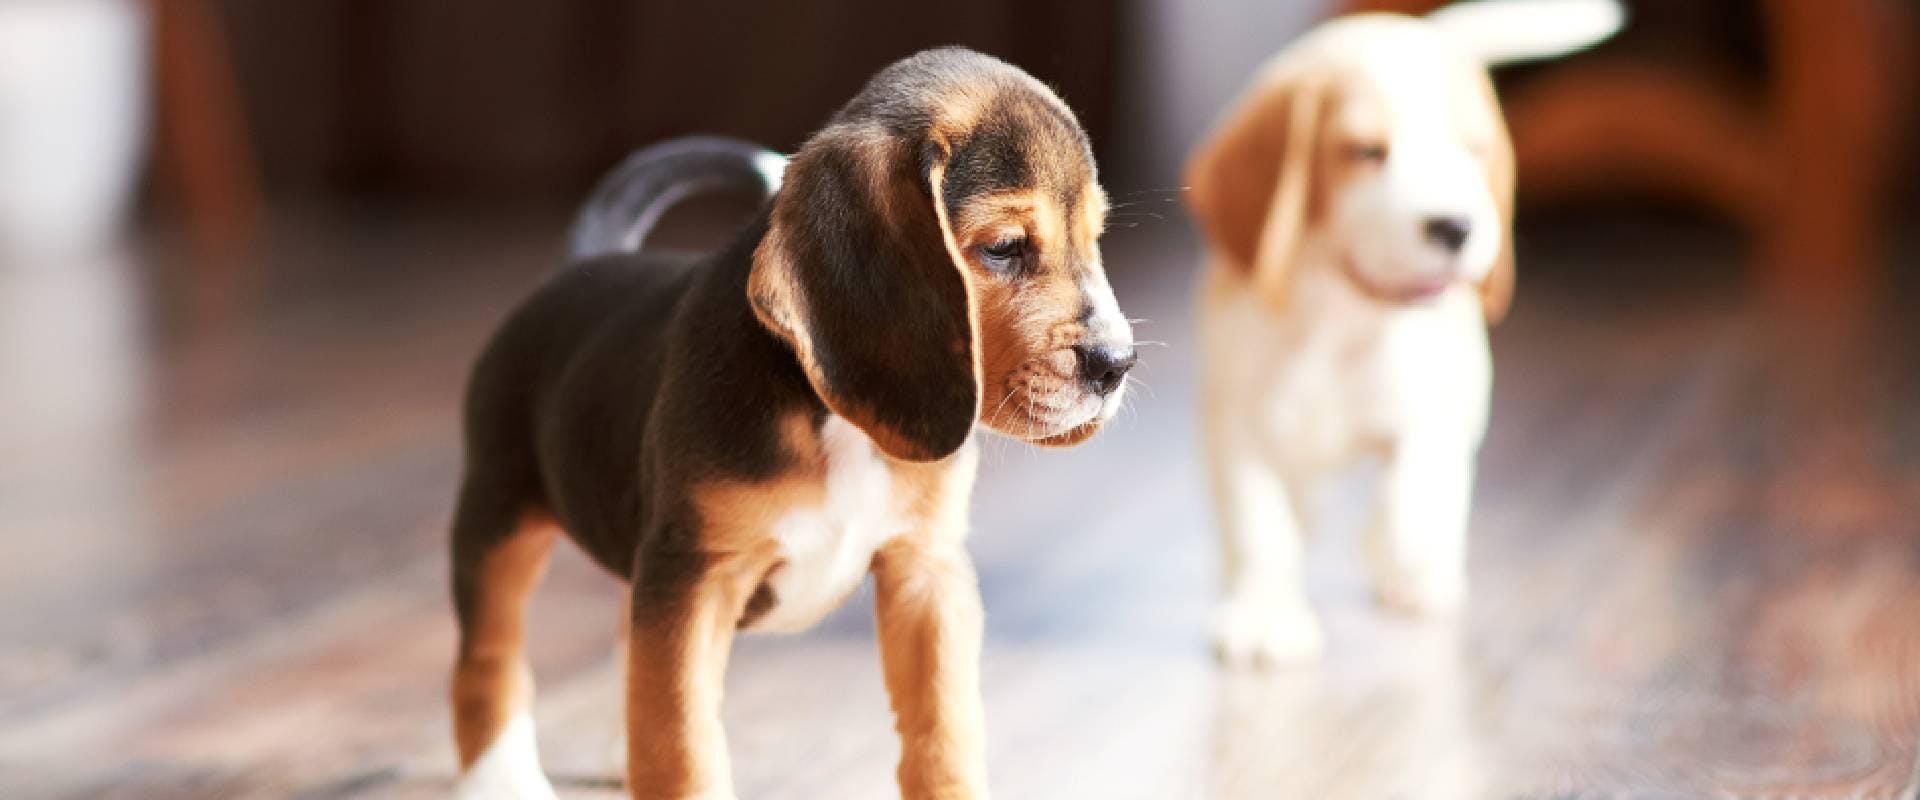 Beagle puppies at home